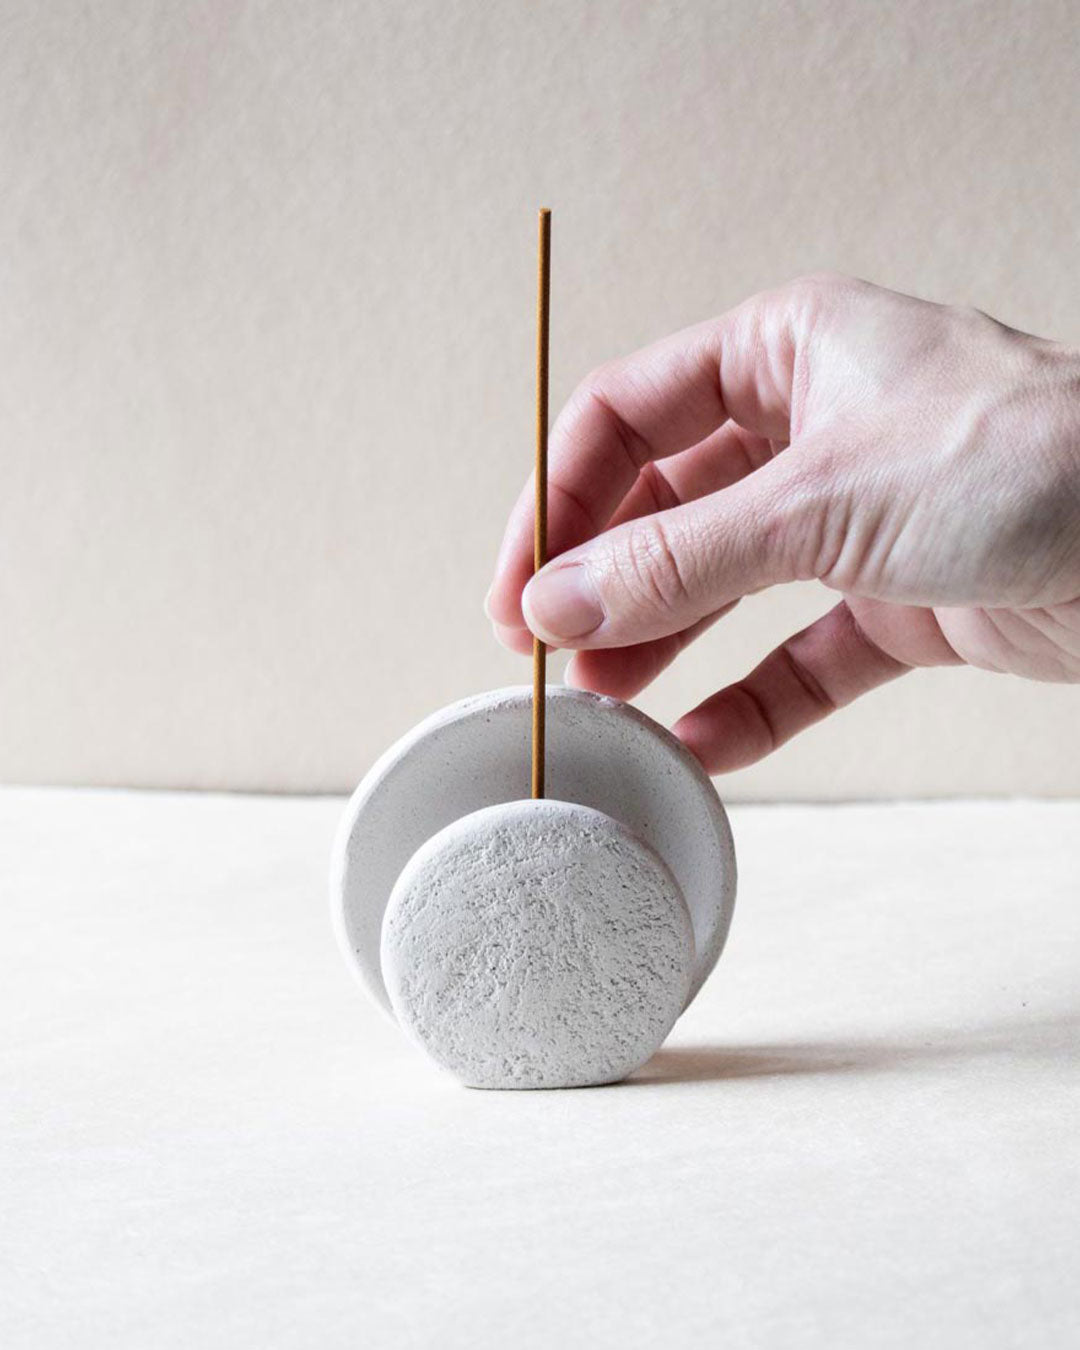 Nomad Luna - Full moon incense burner ceramics Claire Lune